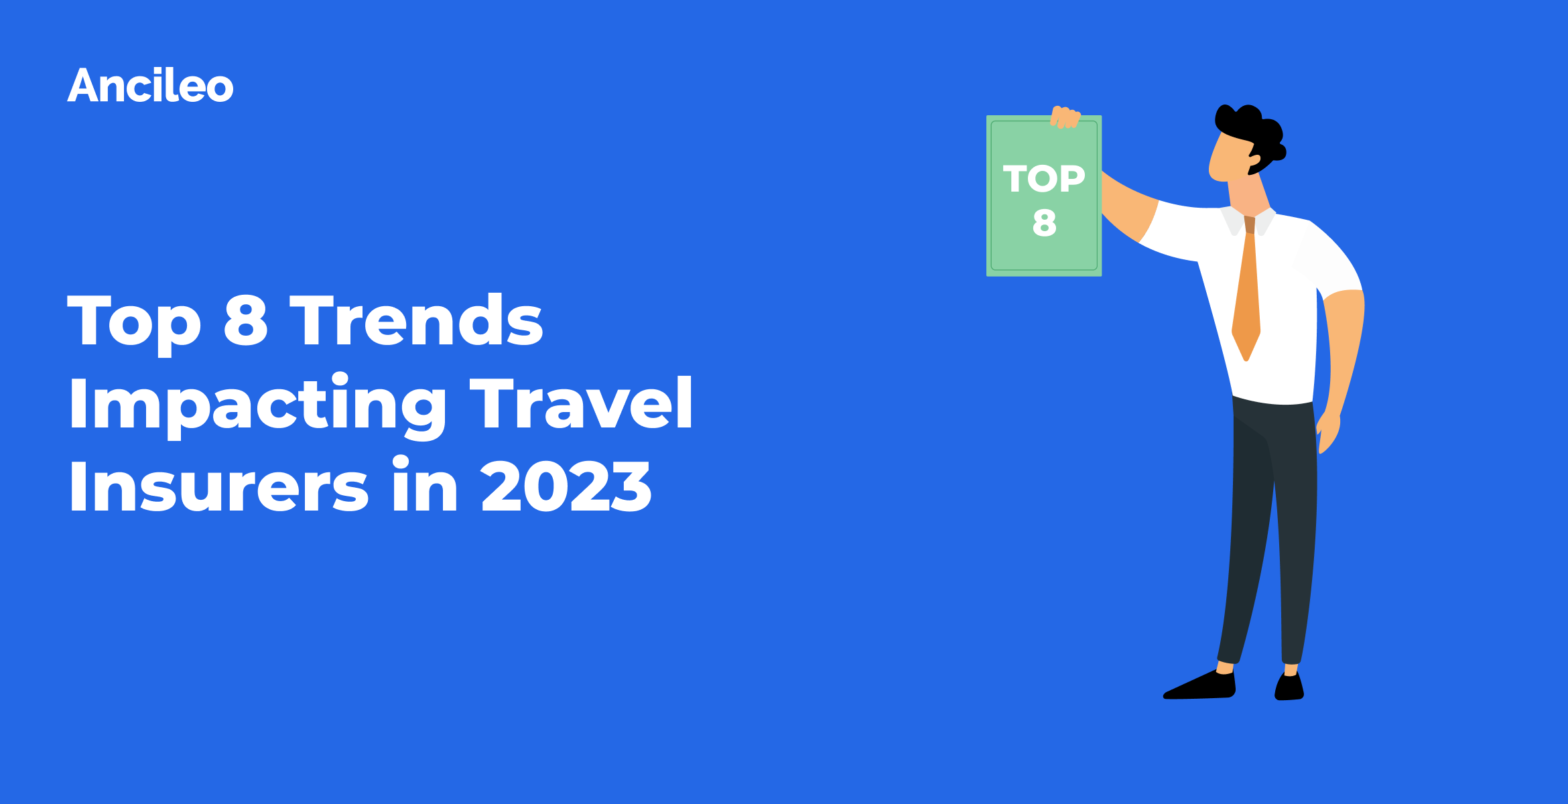 Top 8 Trends Impacting Travel Insurers in 2023